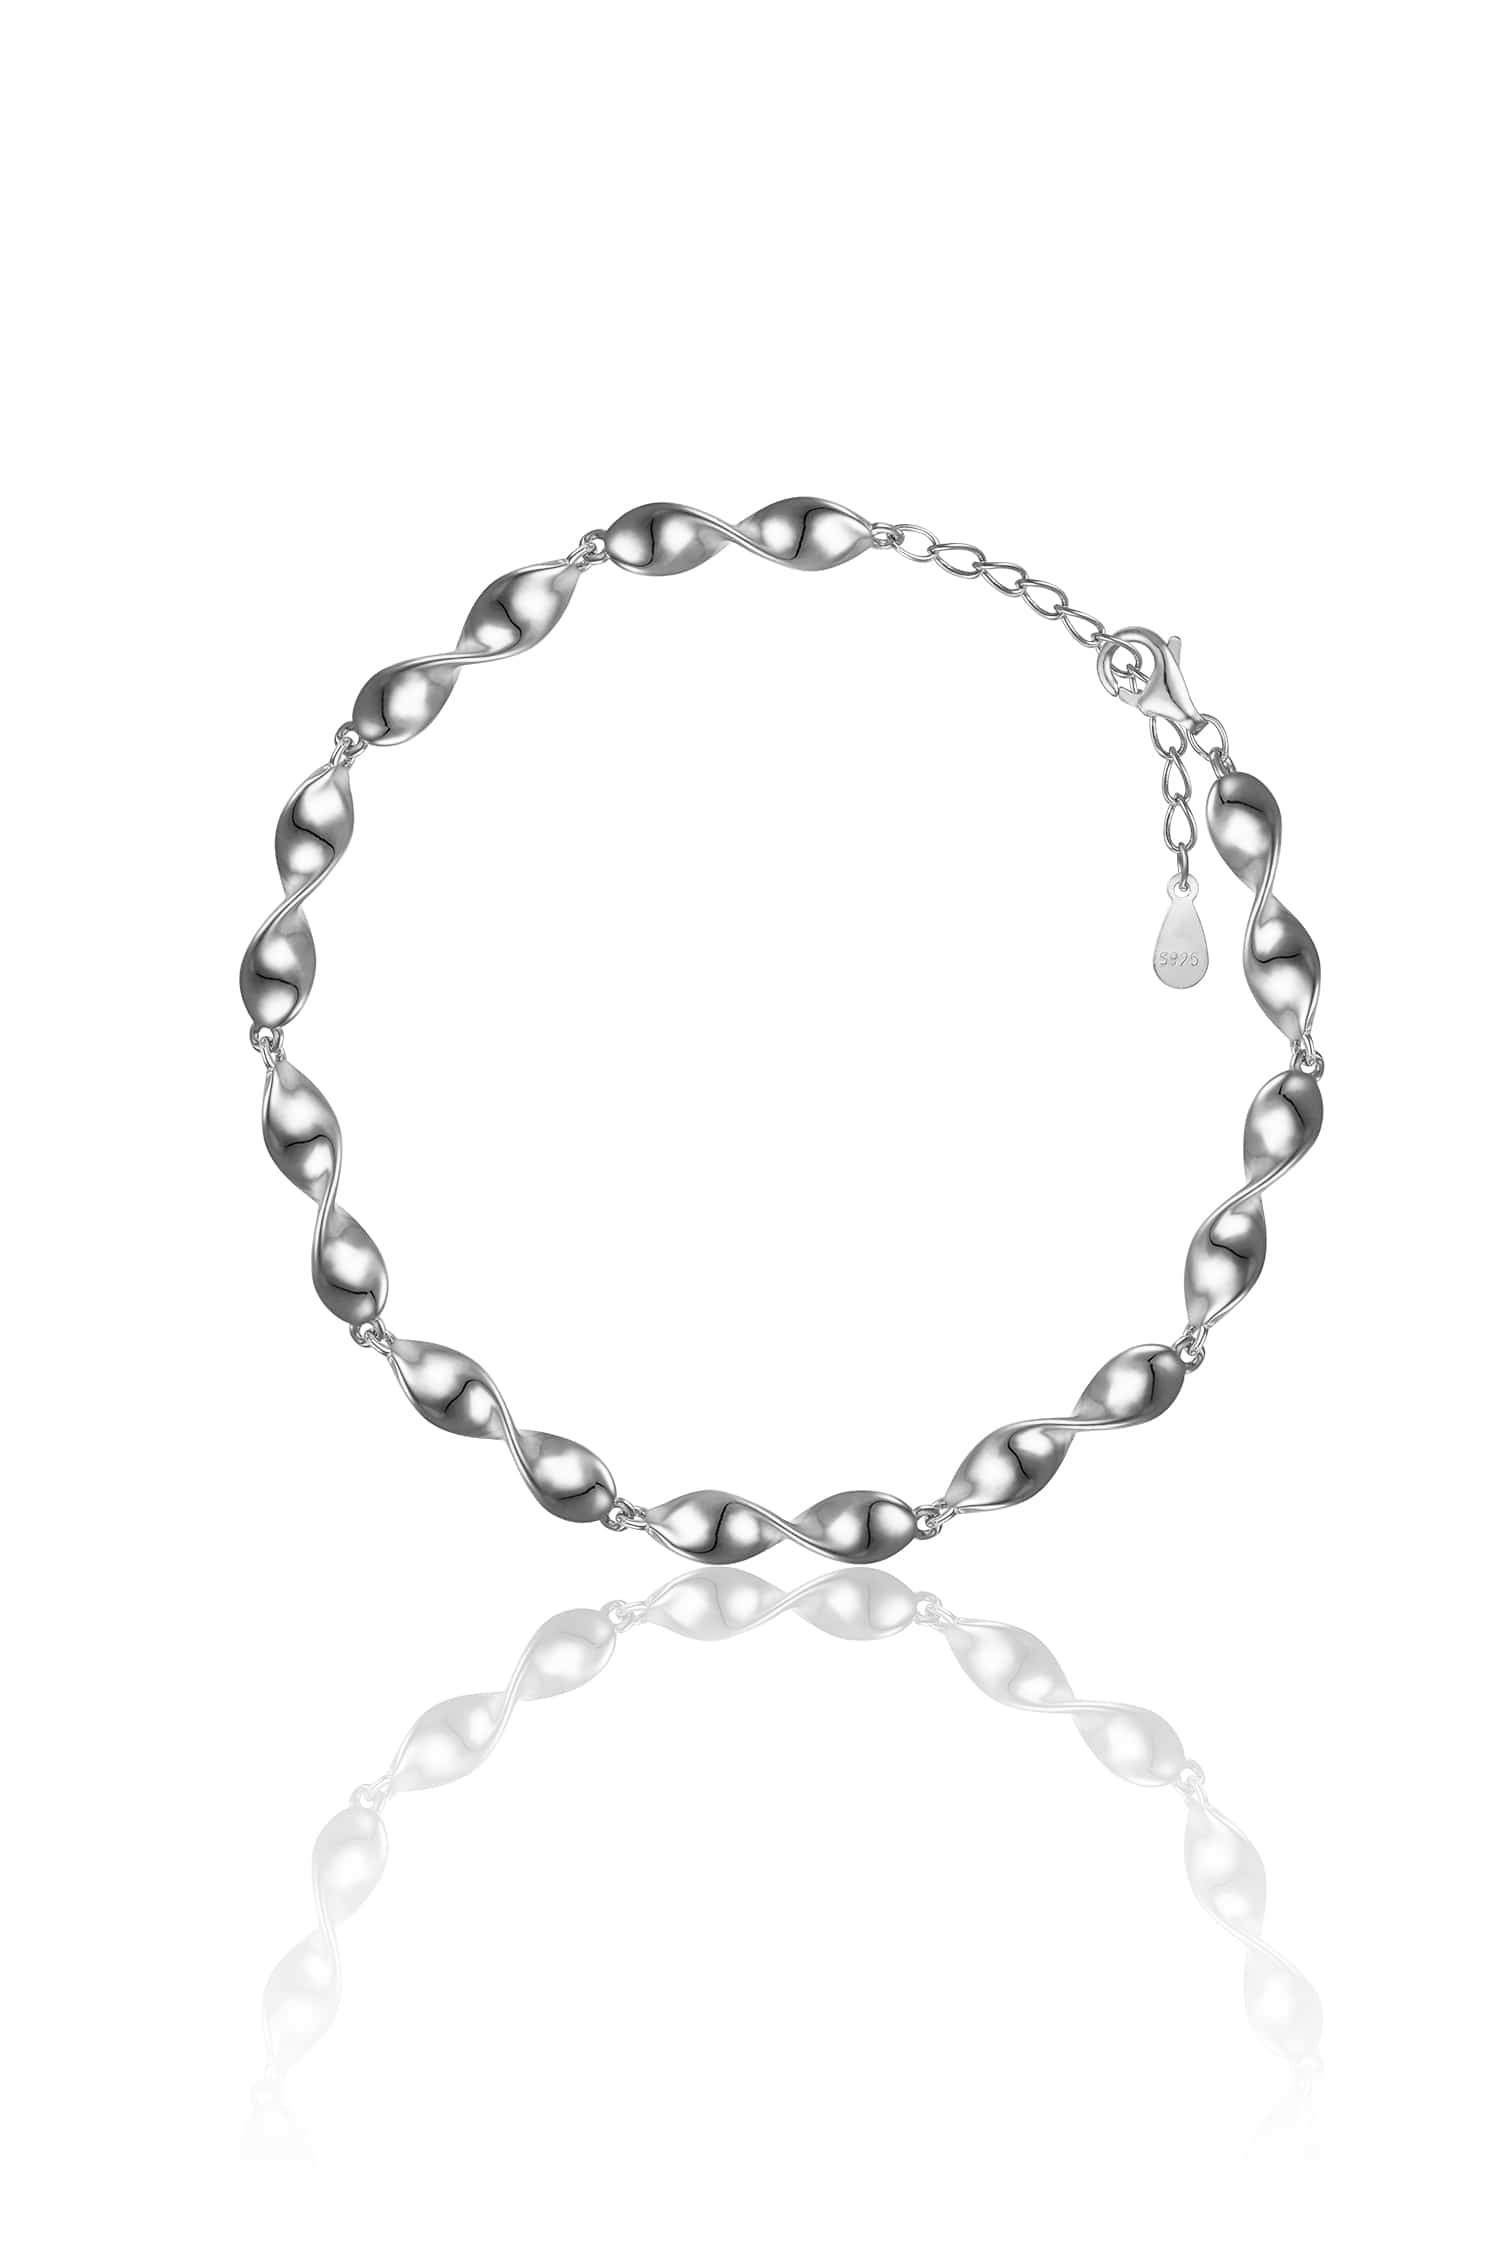 [silver925]gentle wave bracelet